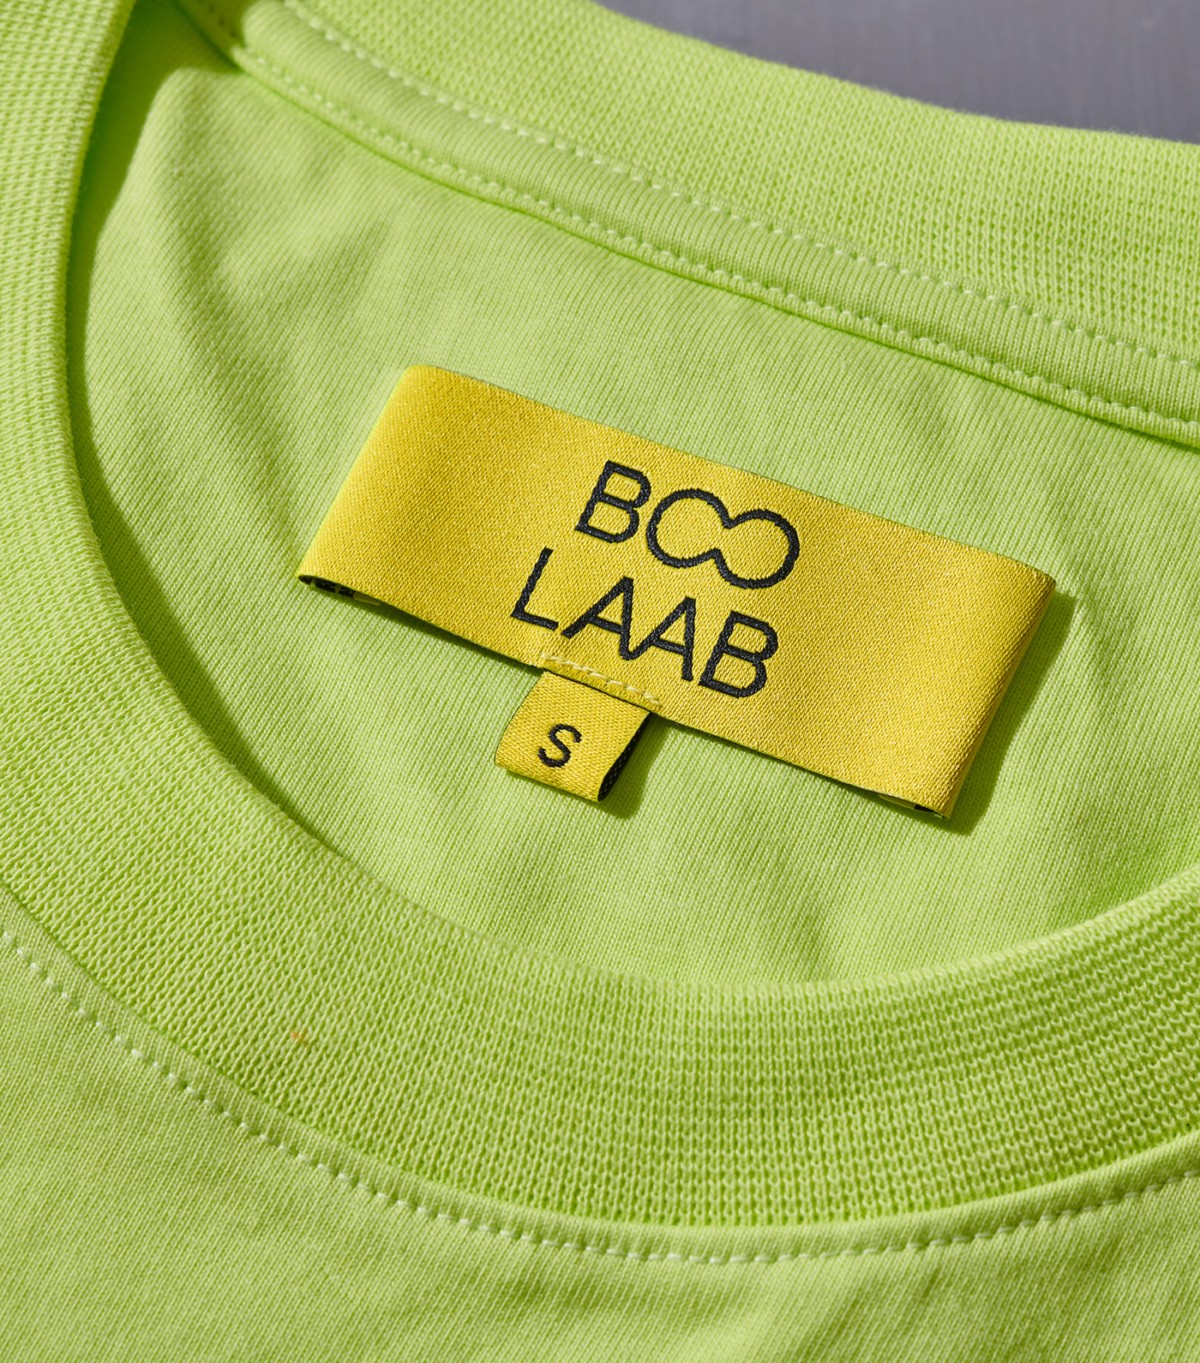 越南街头服饰品牌BOO形象视觉设计